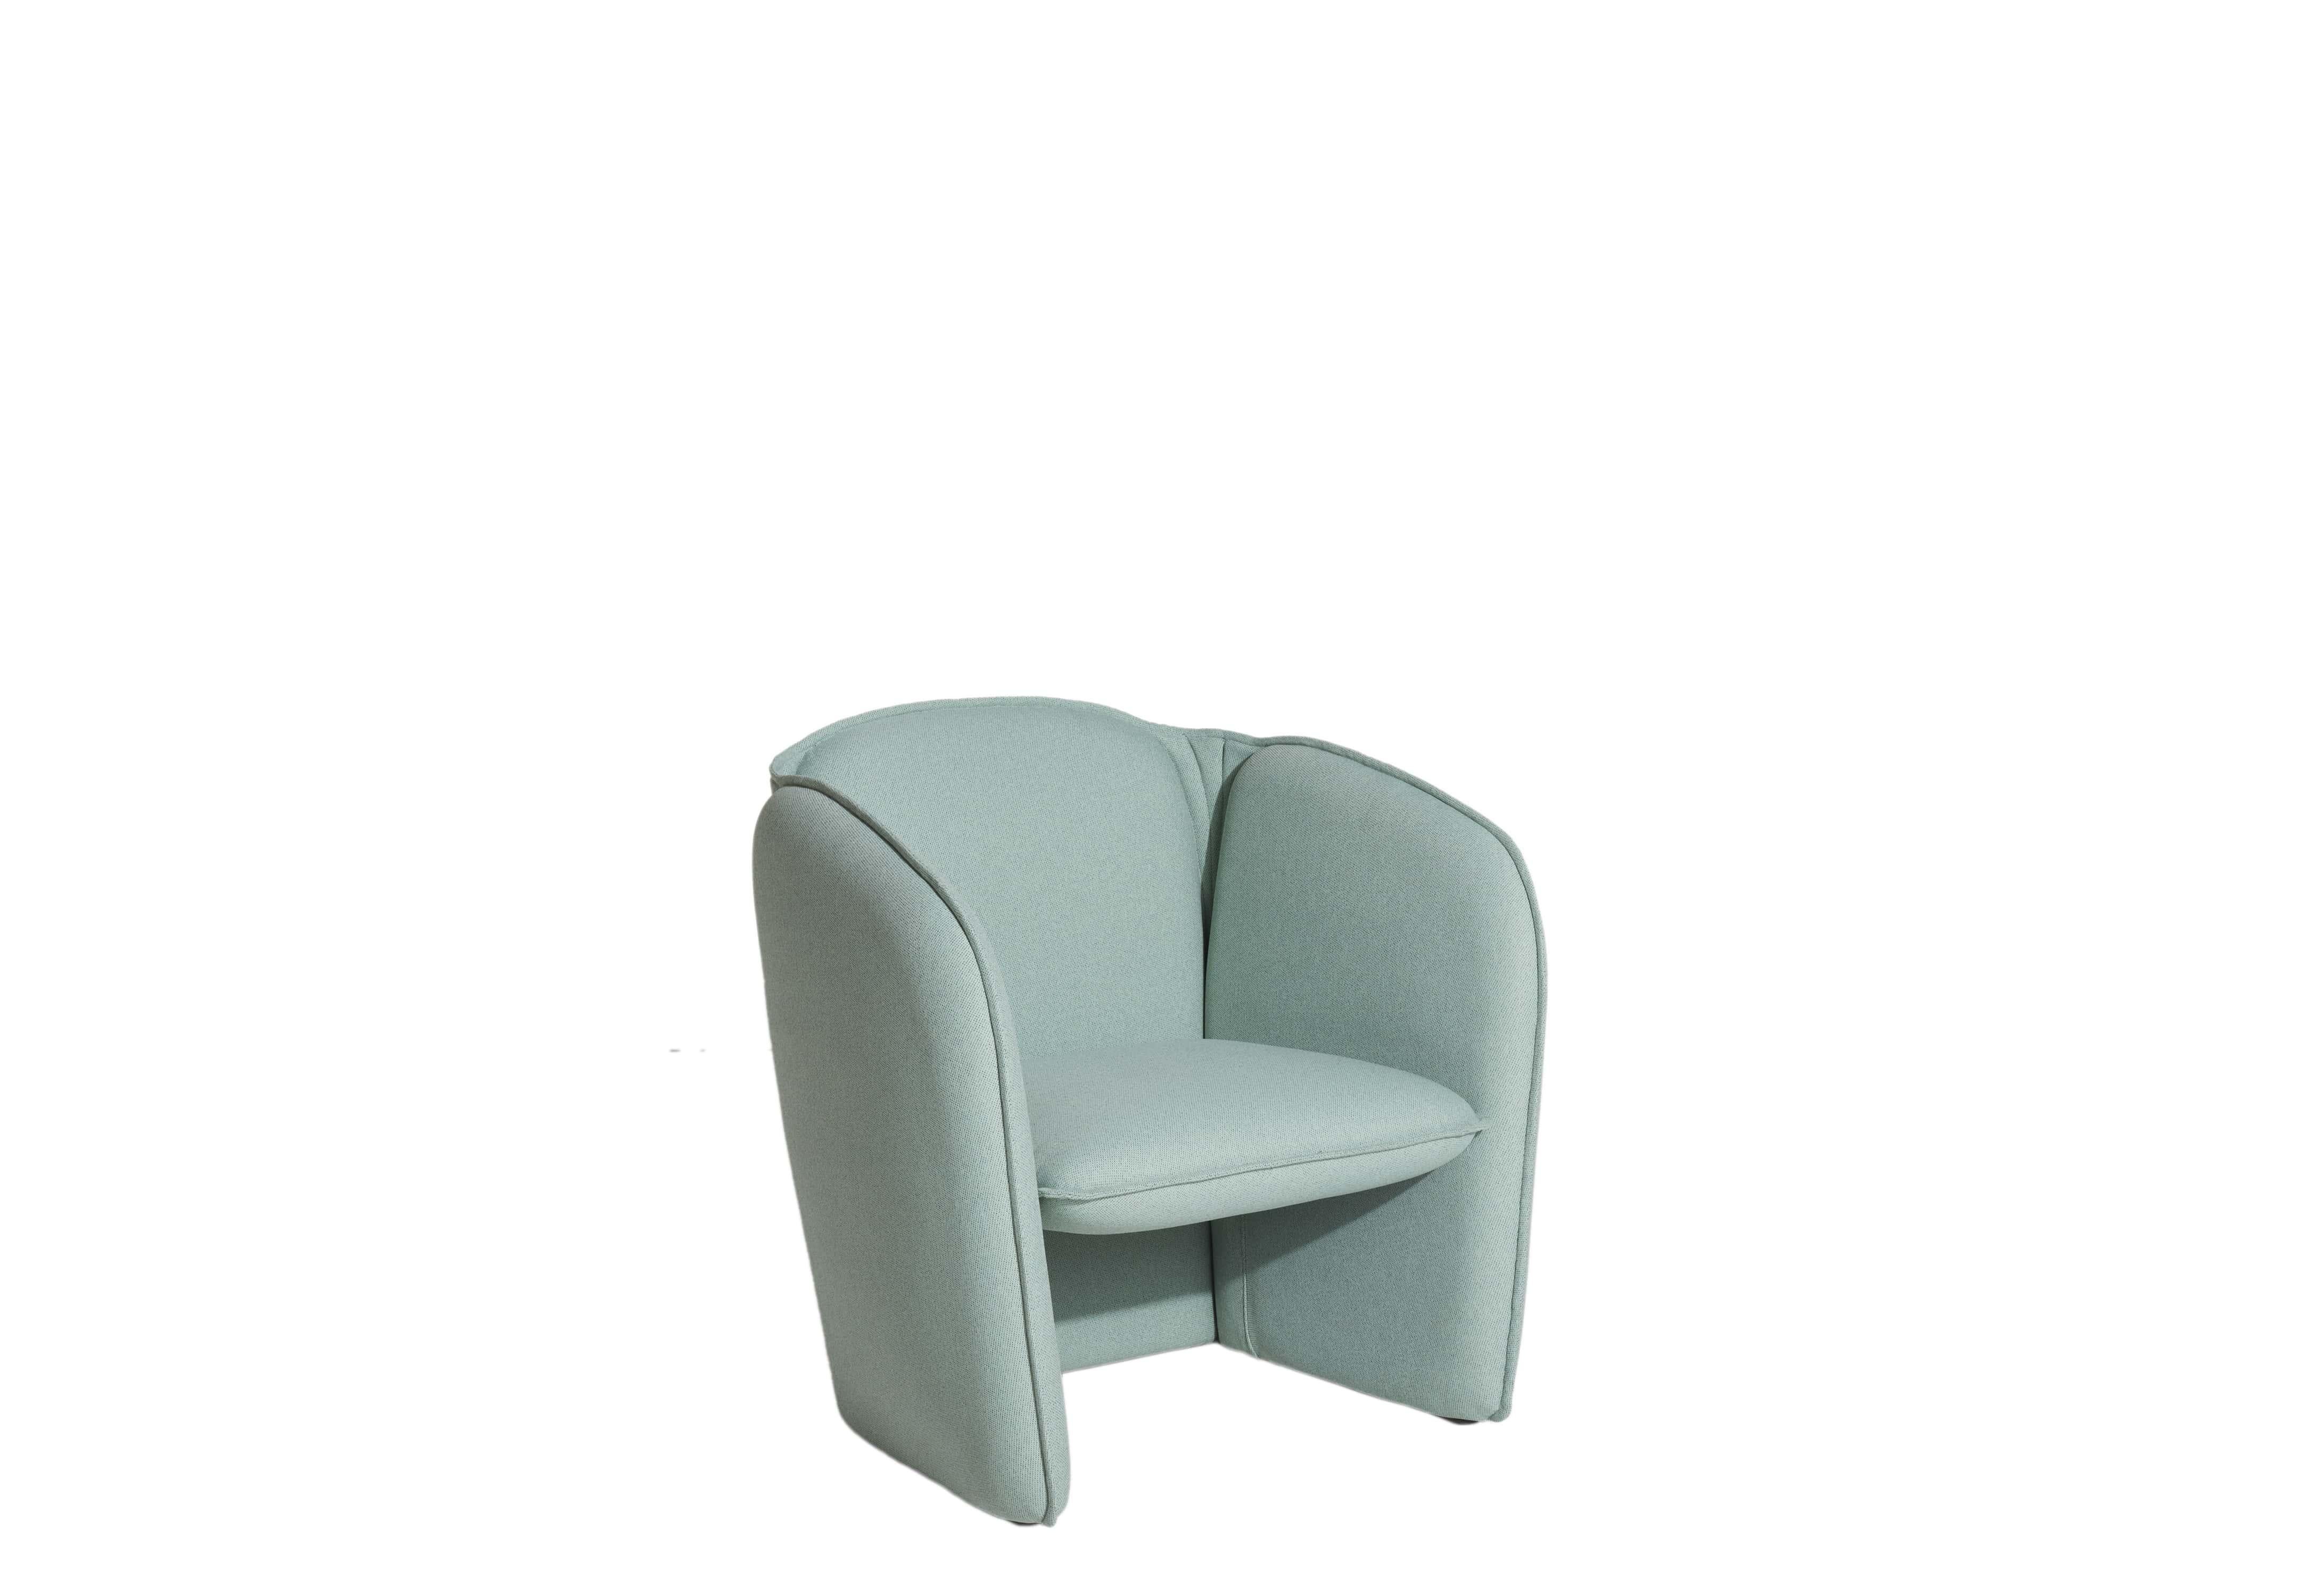 Petite Friture Lily Sessel in Hellblau von Färg & Blanche, 2022

Eine umfassende Kollektion, bestehend aus einem Sofa und einem Sessel. Mit tadellosen, prägnanten Proportionen und glatten, organischen Konturen, die ein gastfreundliches Gefühl